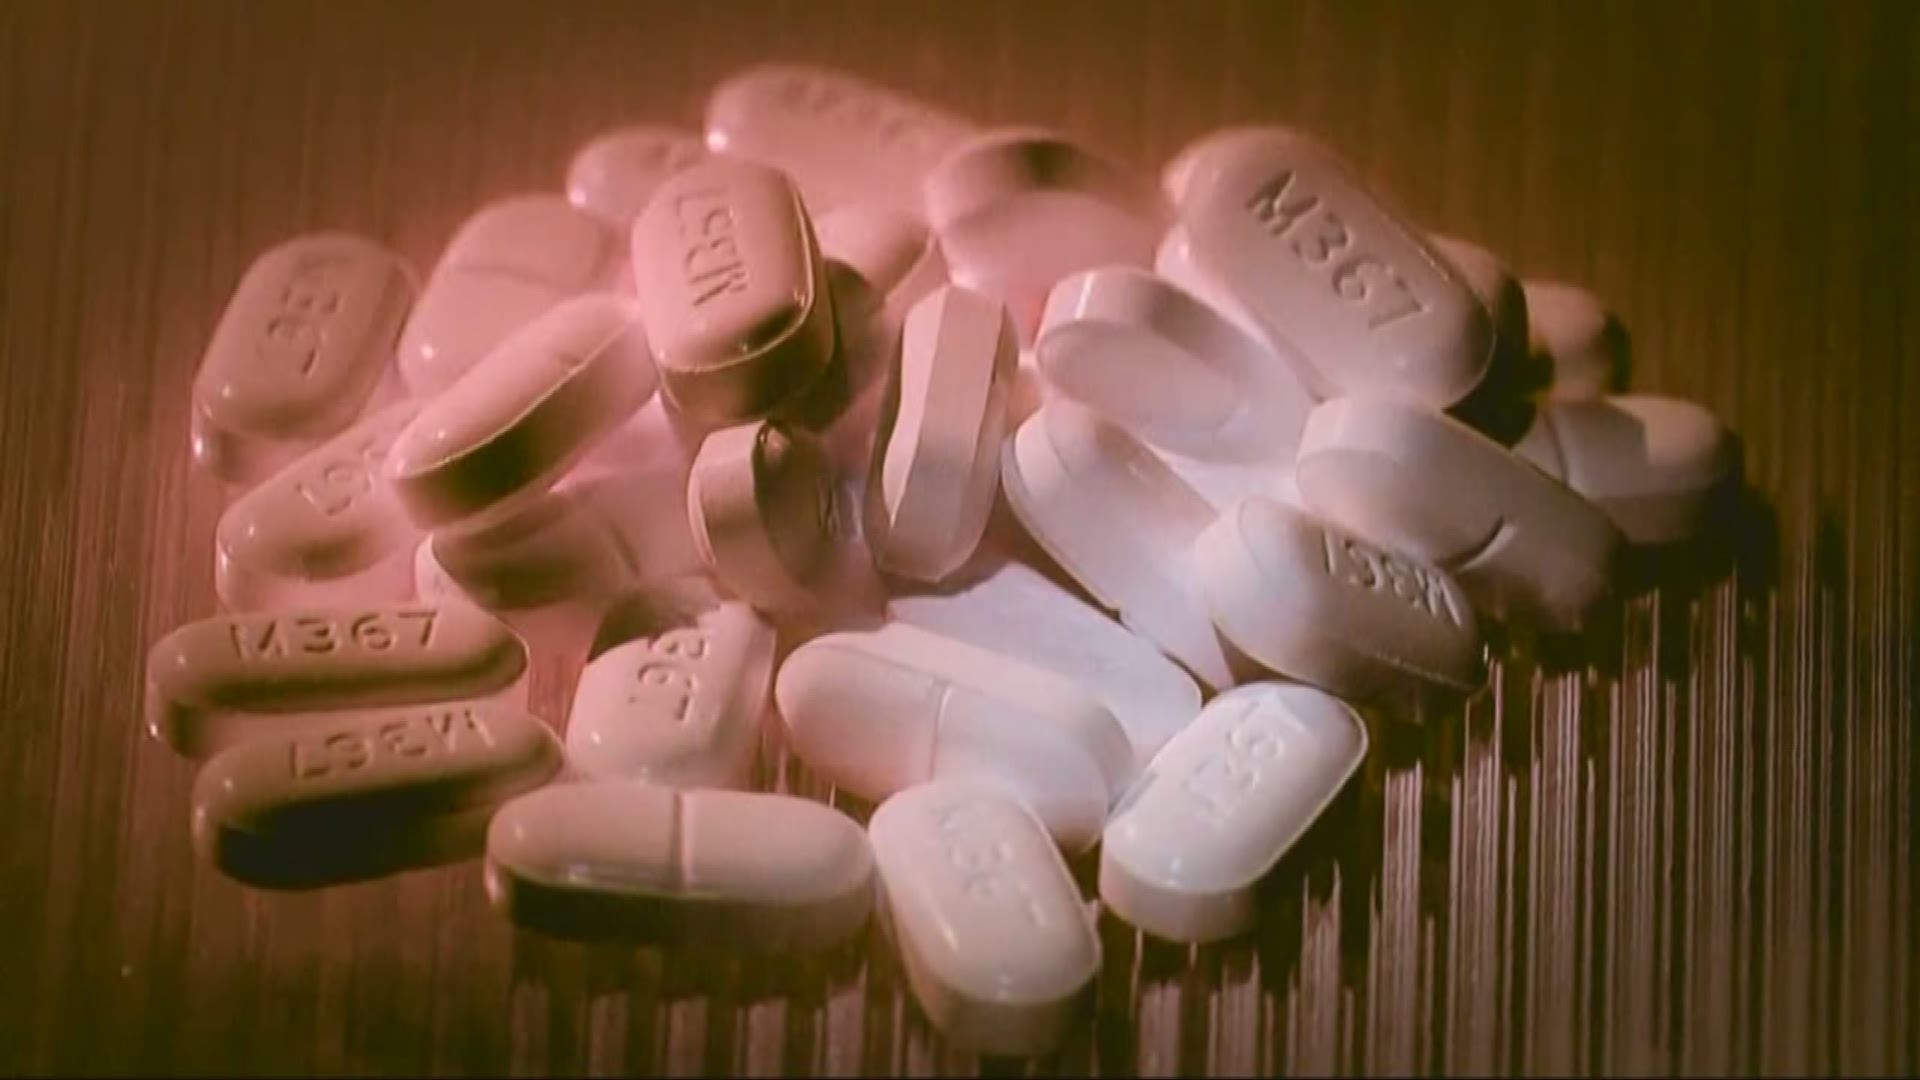 Oregon seniors hit hard by opioid use